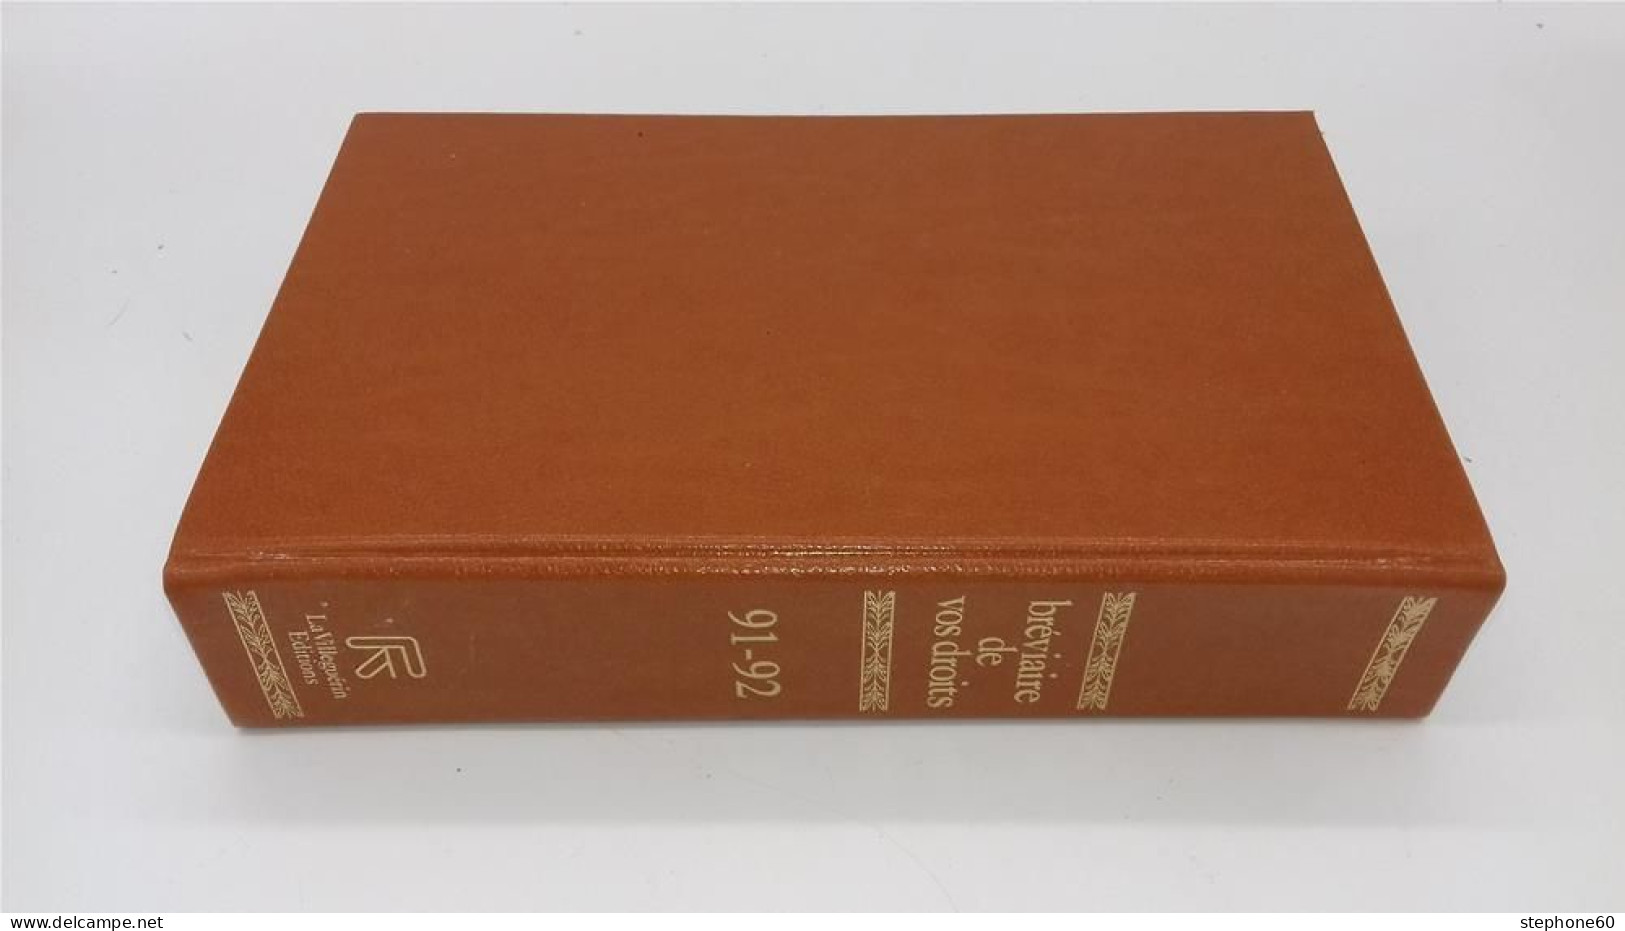 998 - (115) Breviaire De Vos Droits - Edition 1991 - 1992 - La Villeguerin Editions - Rechts